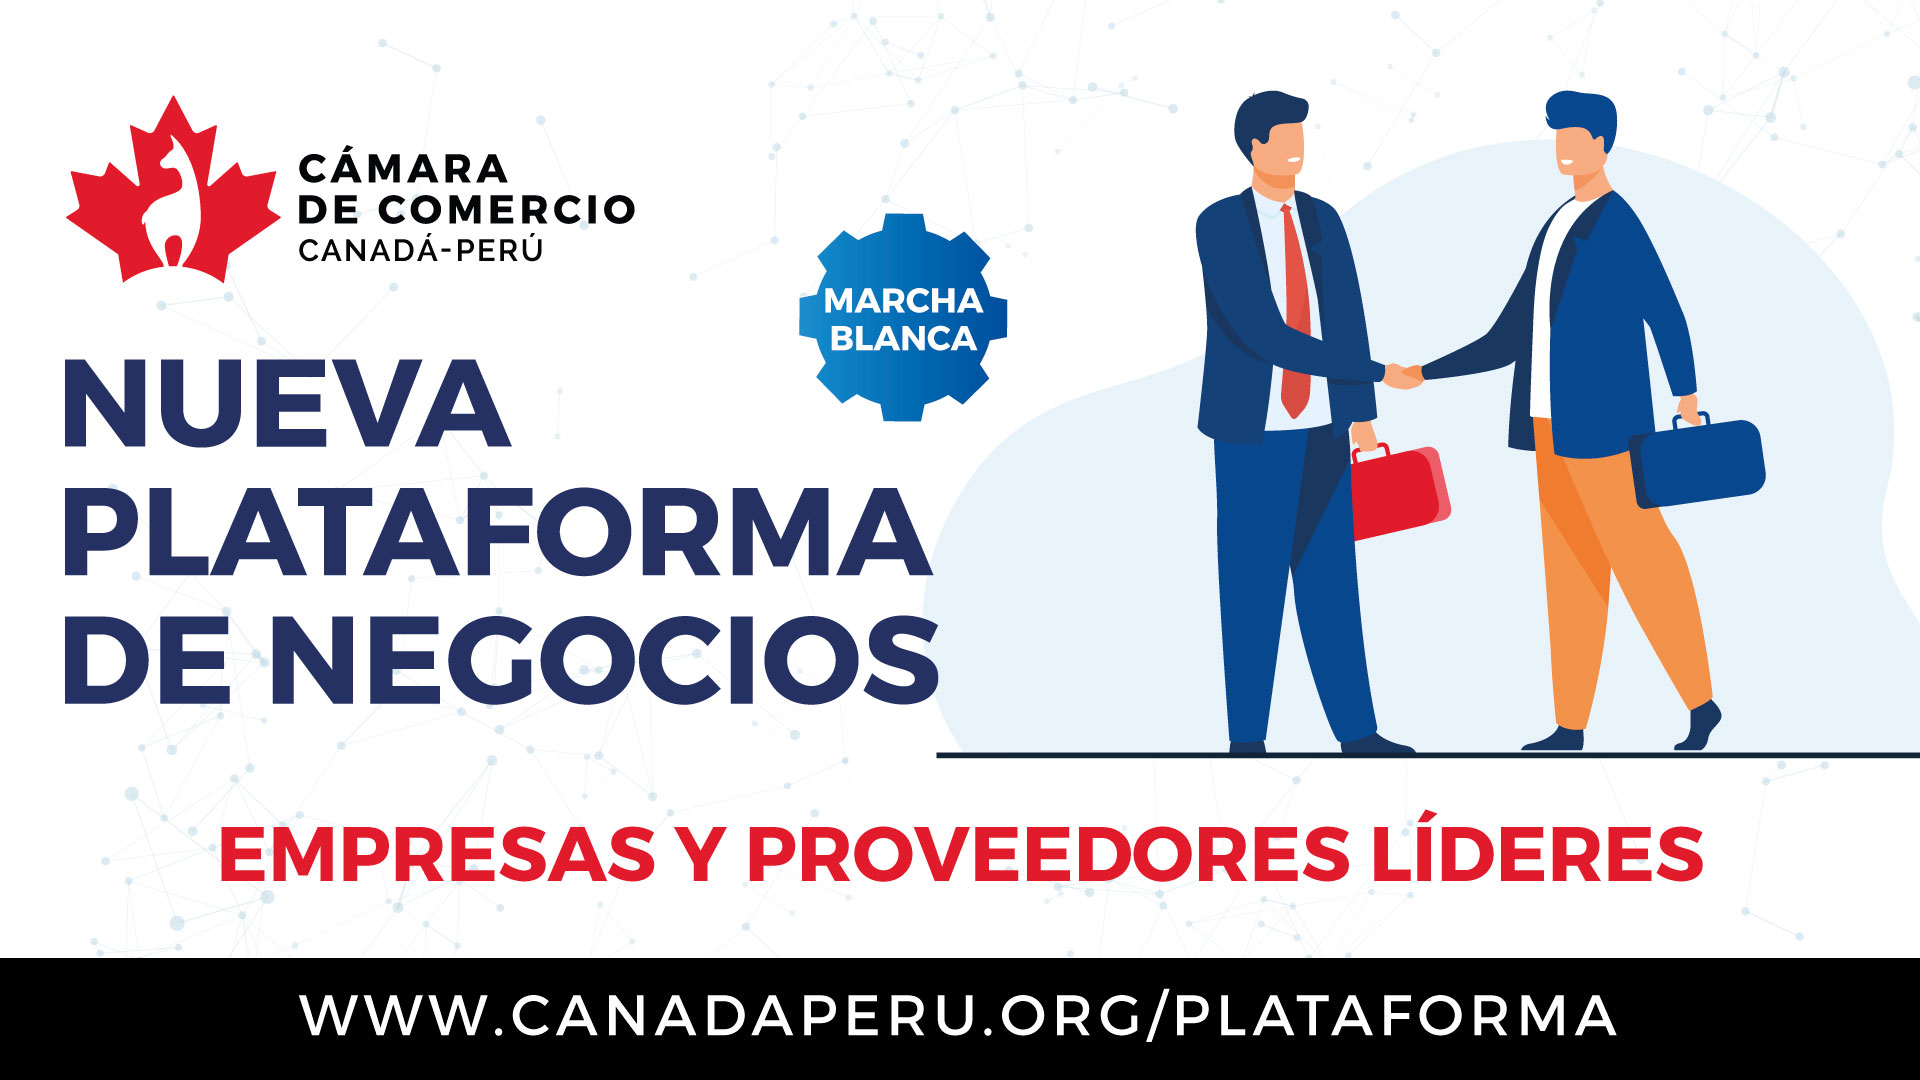 Cámara de comercio Canadá Perú lanza exclusiva plataforma de negocios de conexión directa para empresas mineras y de diversos sectores económicos, con proveedores de clase mundial